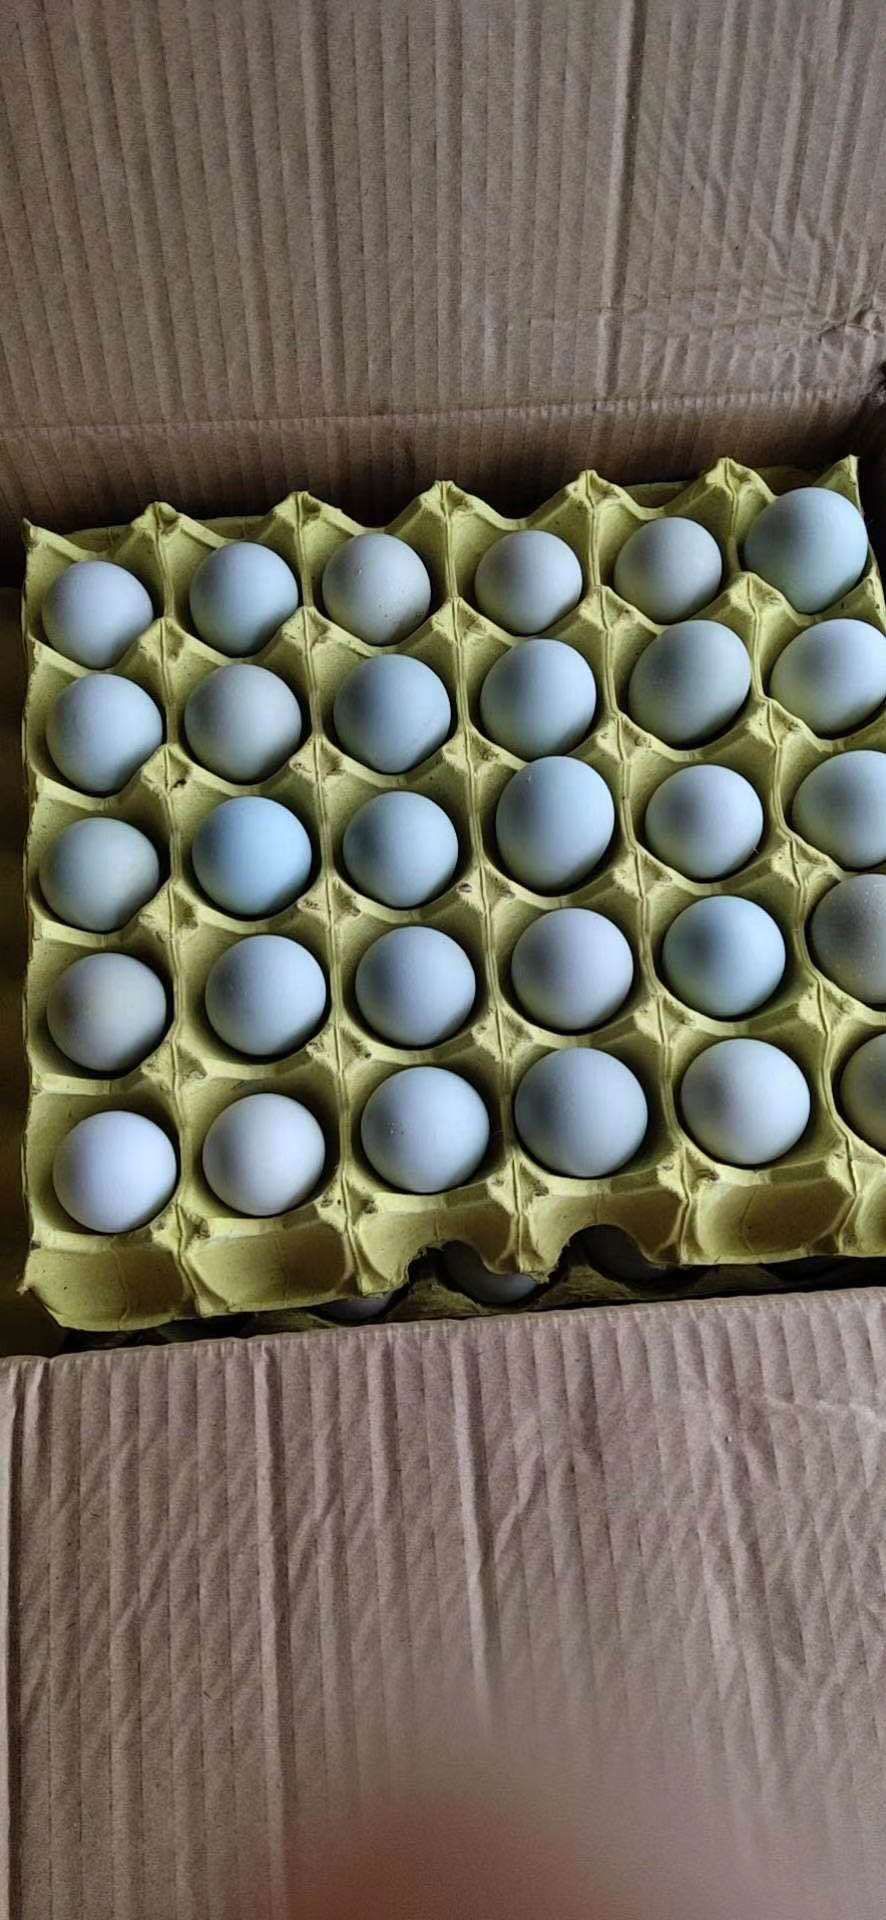 武汉初生蛋  鸡场直销绿壳蛋14个一斤480个装34斤全国发货破